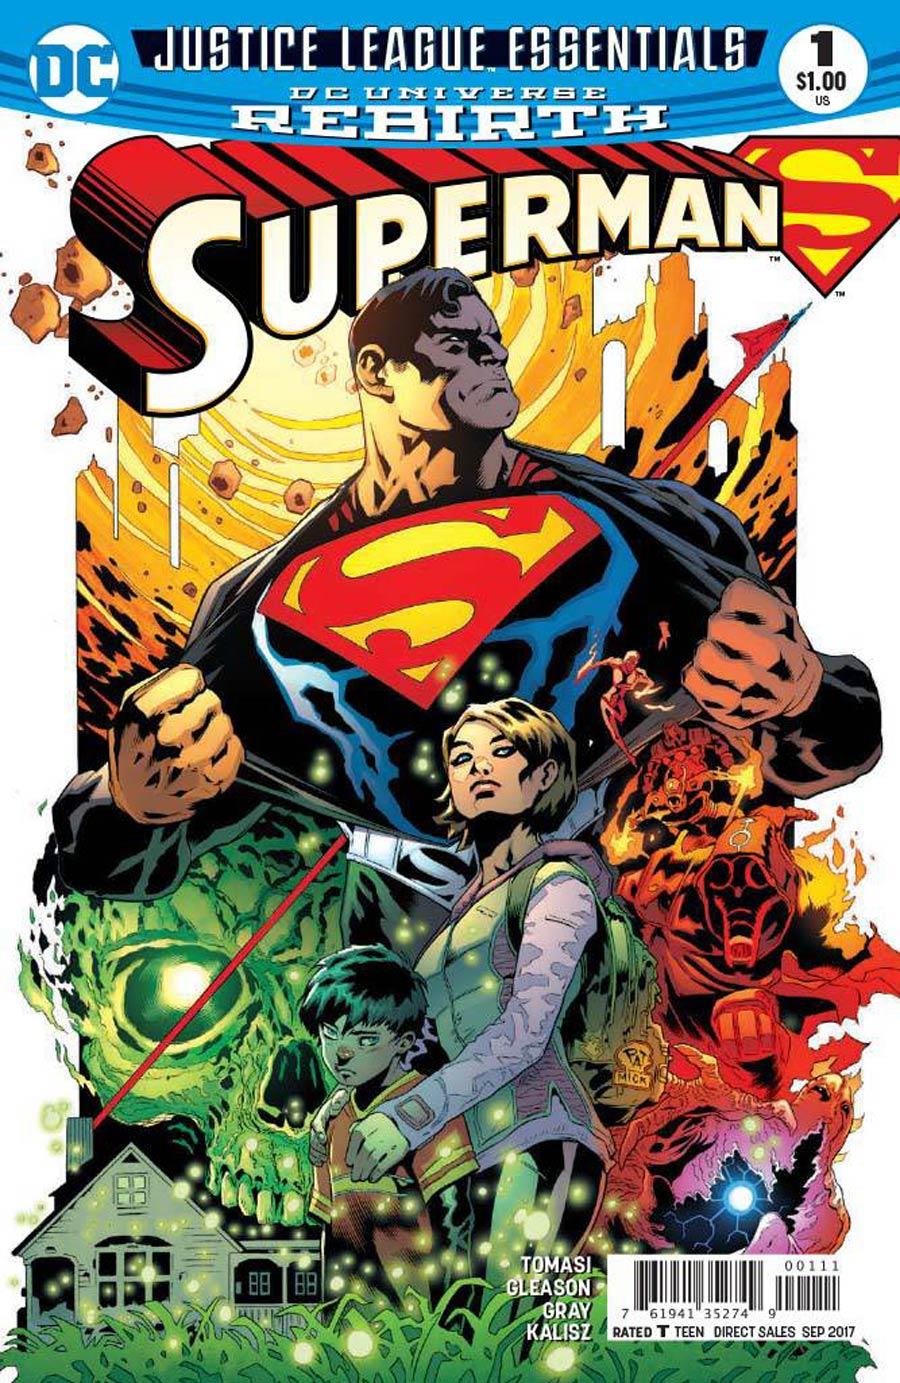 DC Justice League Essentials Superman Vol. 1 #1